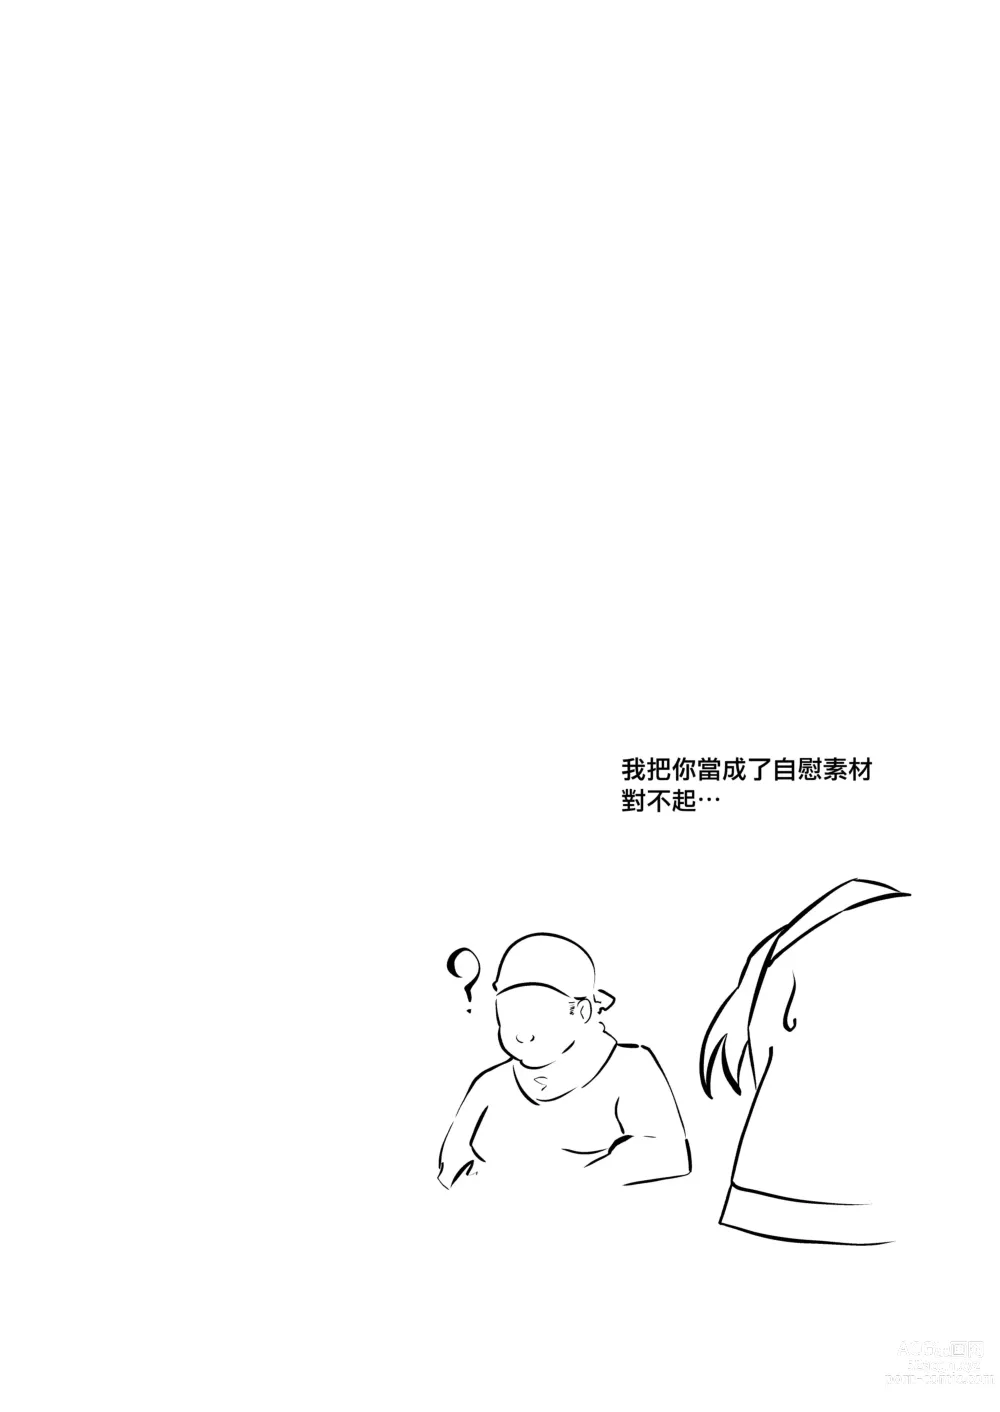 Page 23 of doujinshi 將肢體托付於妄想